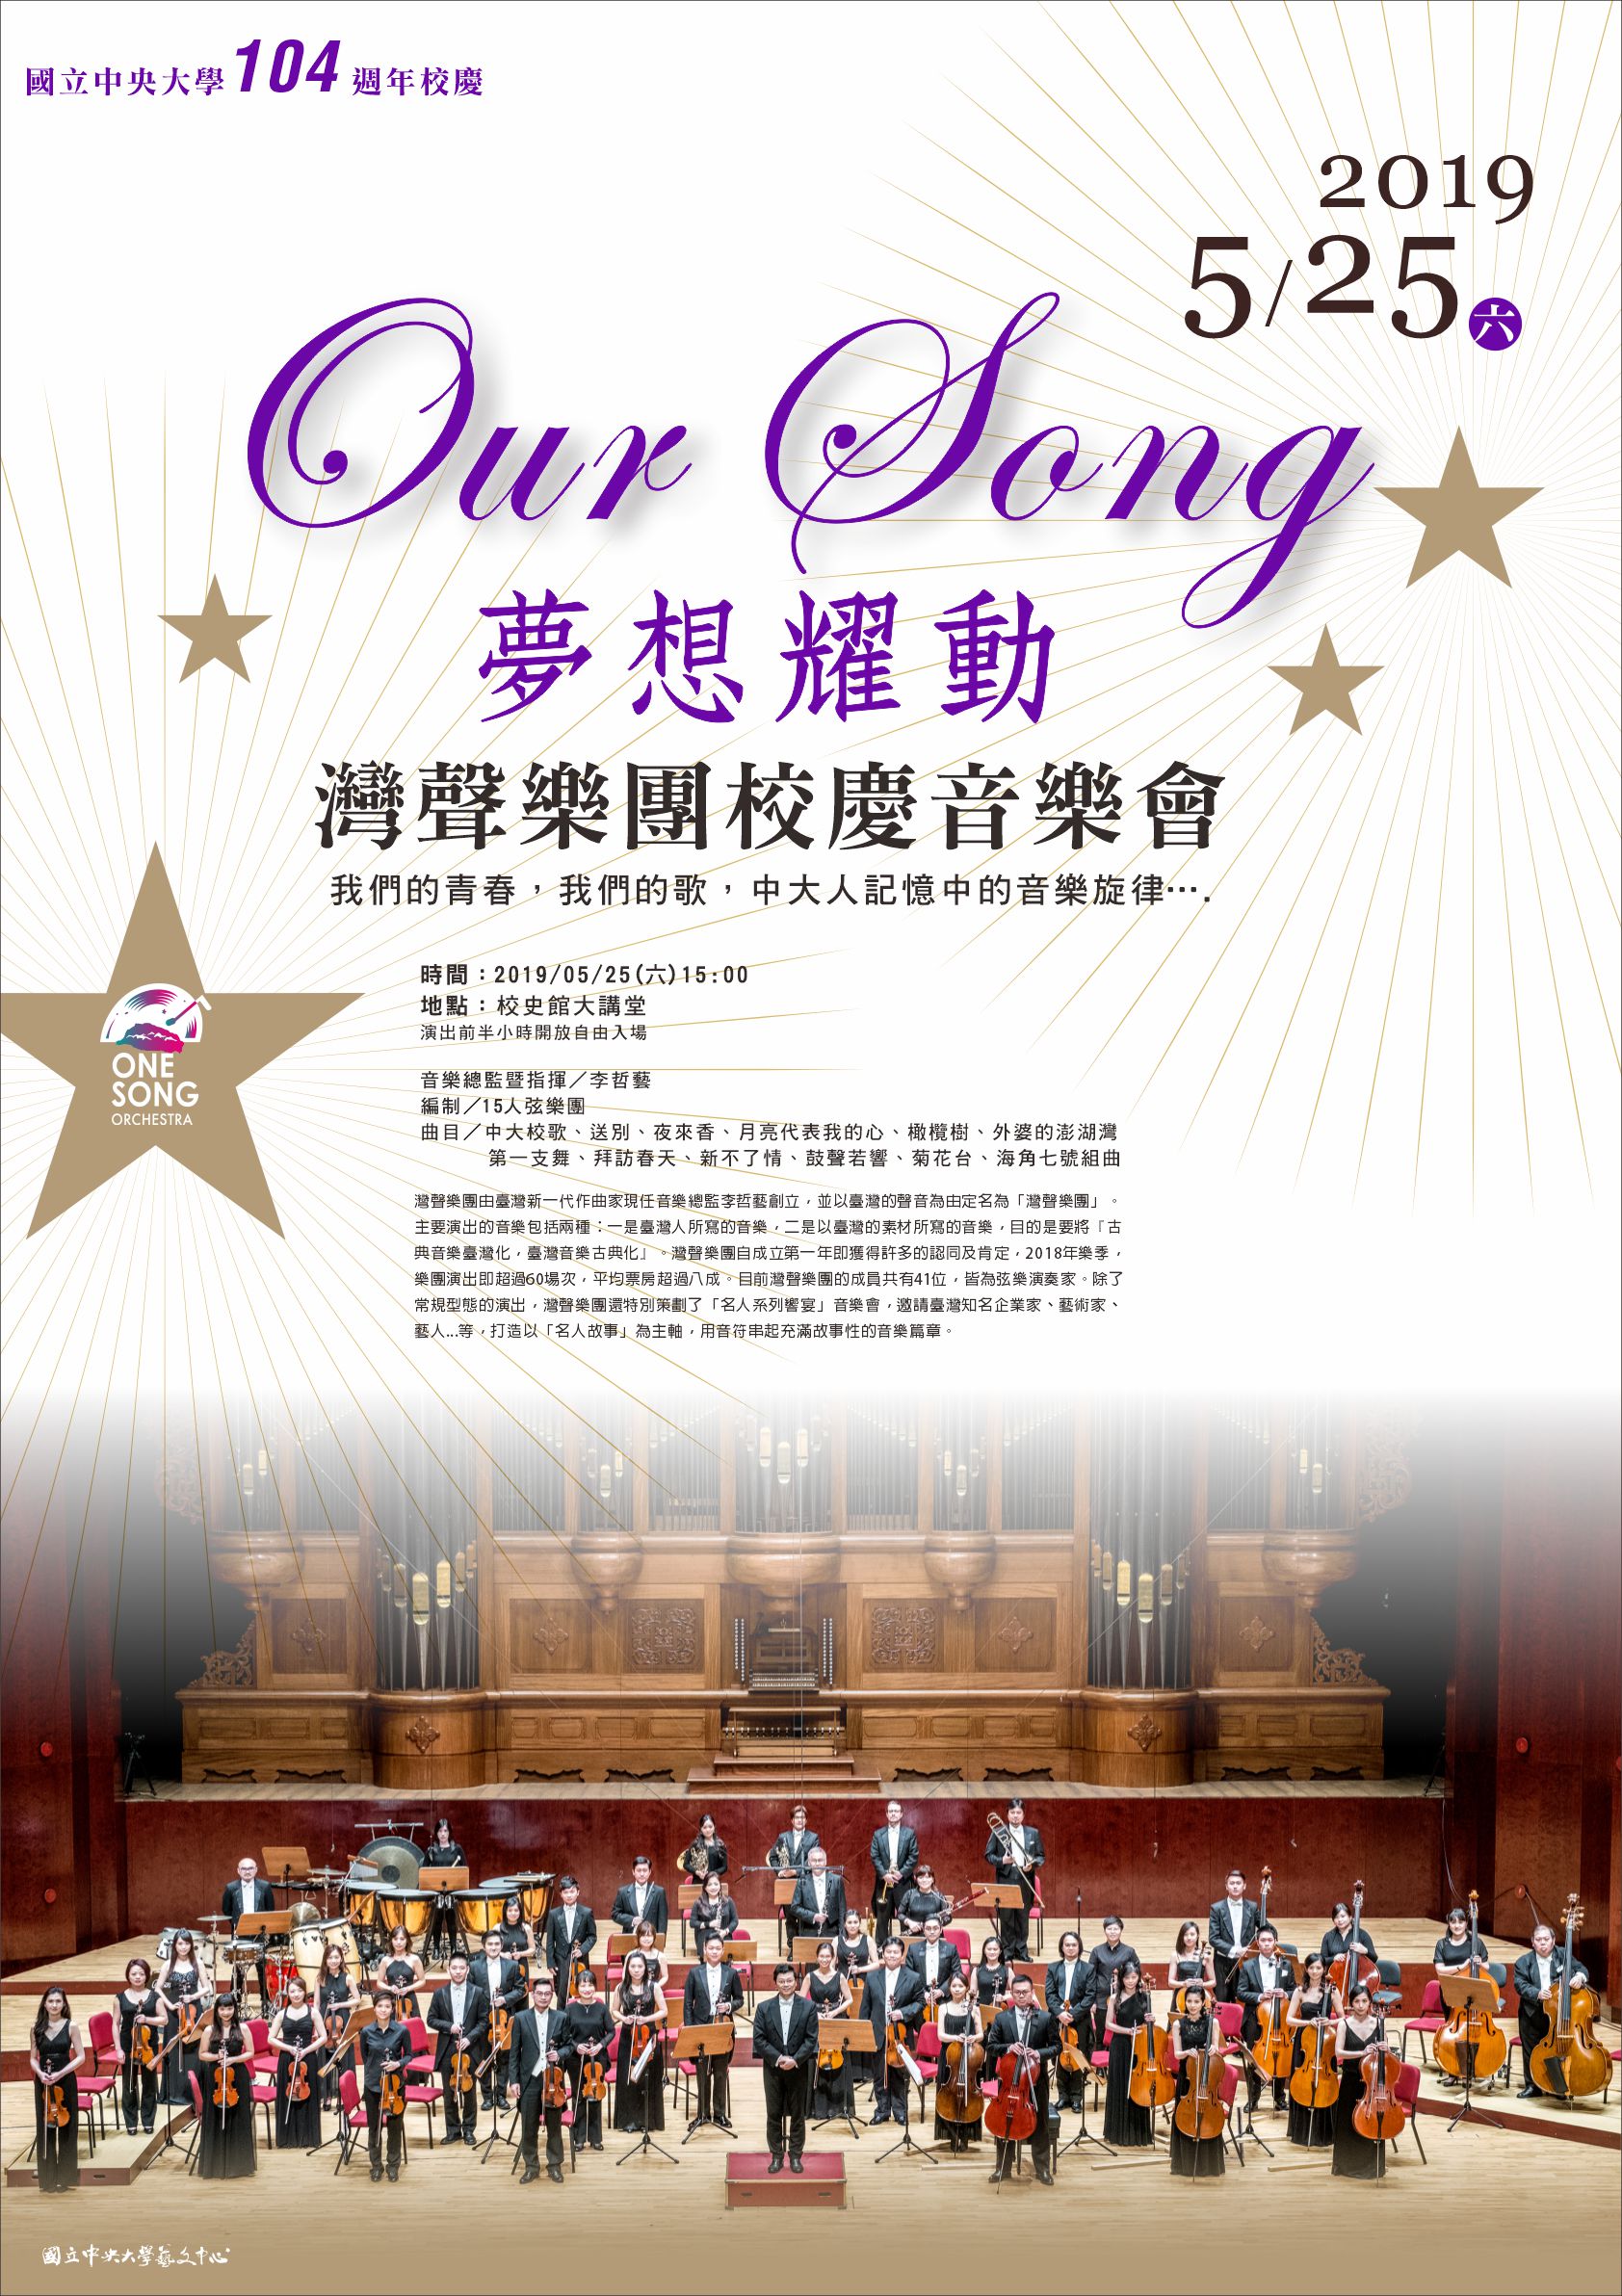 國立中央大學104週年校慶「Our Song夢想耀動」灣聲樂團音樂會